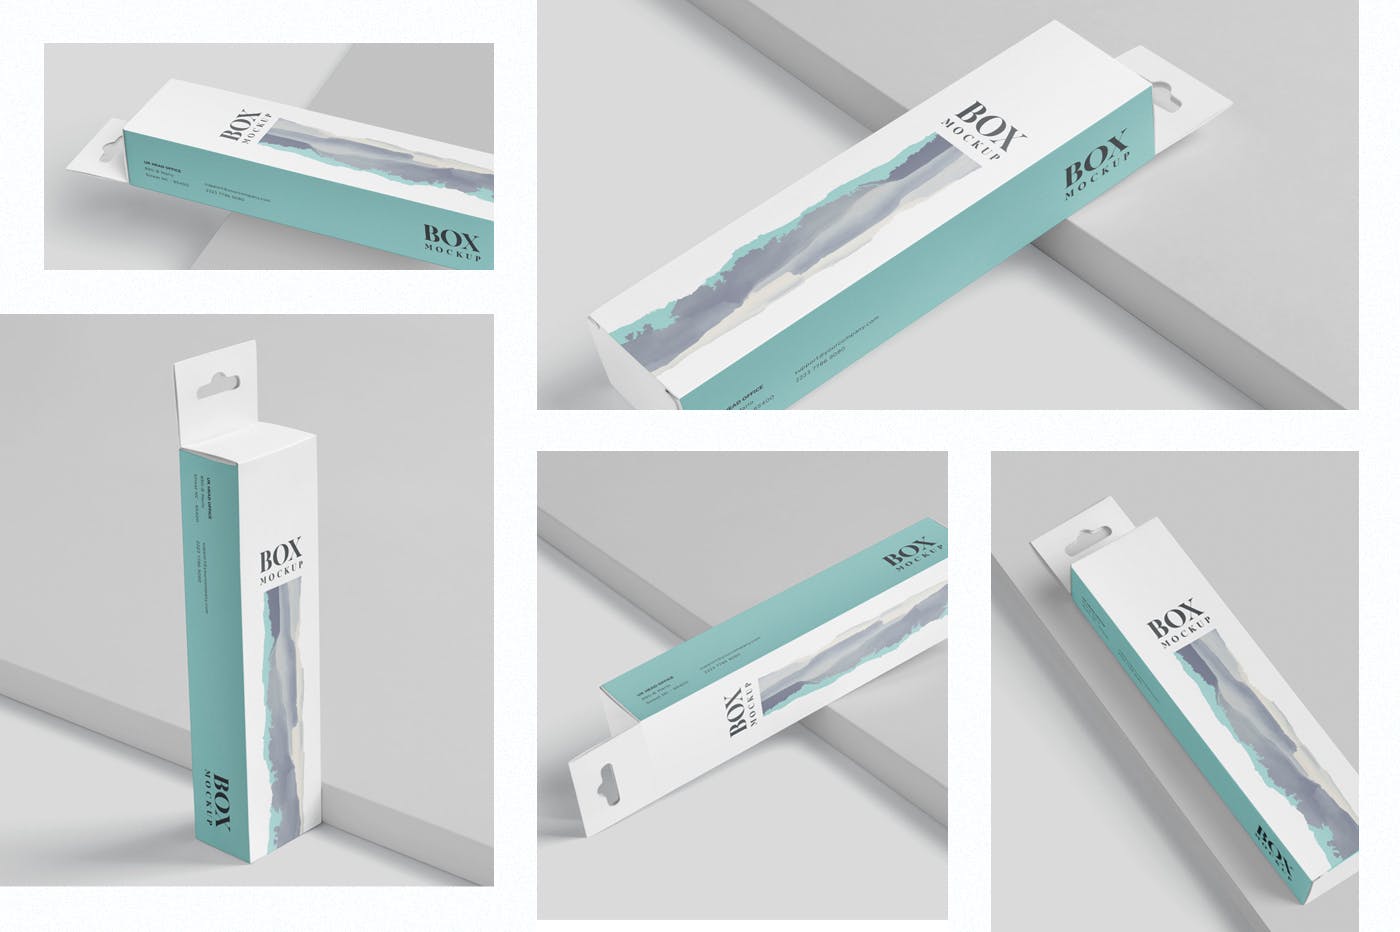 超薄矩形长条包装盒外观设计效果图第一素材精选 Box Mockup PSDs – High Slim Rectangle Size Hanger插图(1)